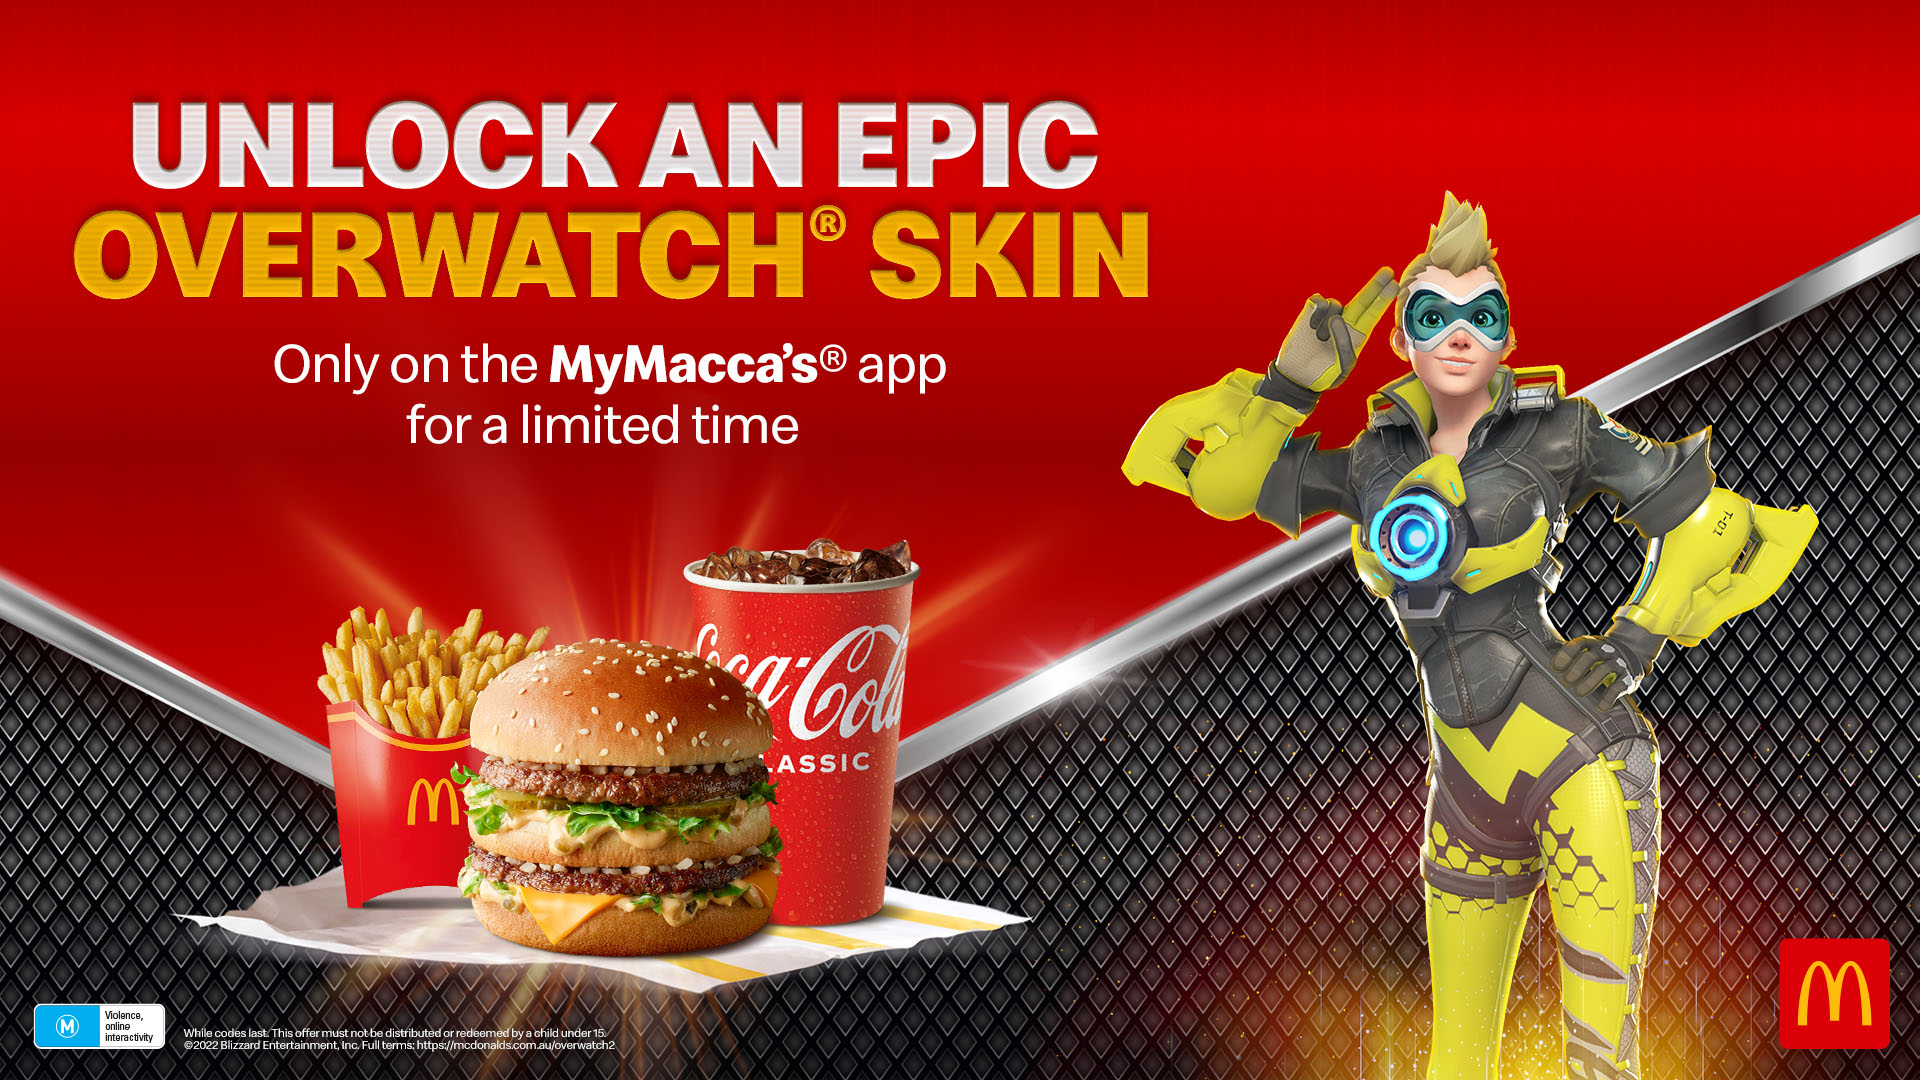 Tracer's skin promo for McDonalds